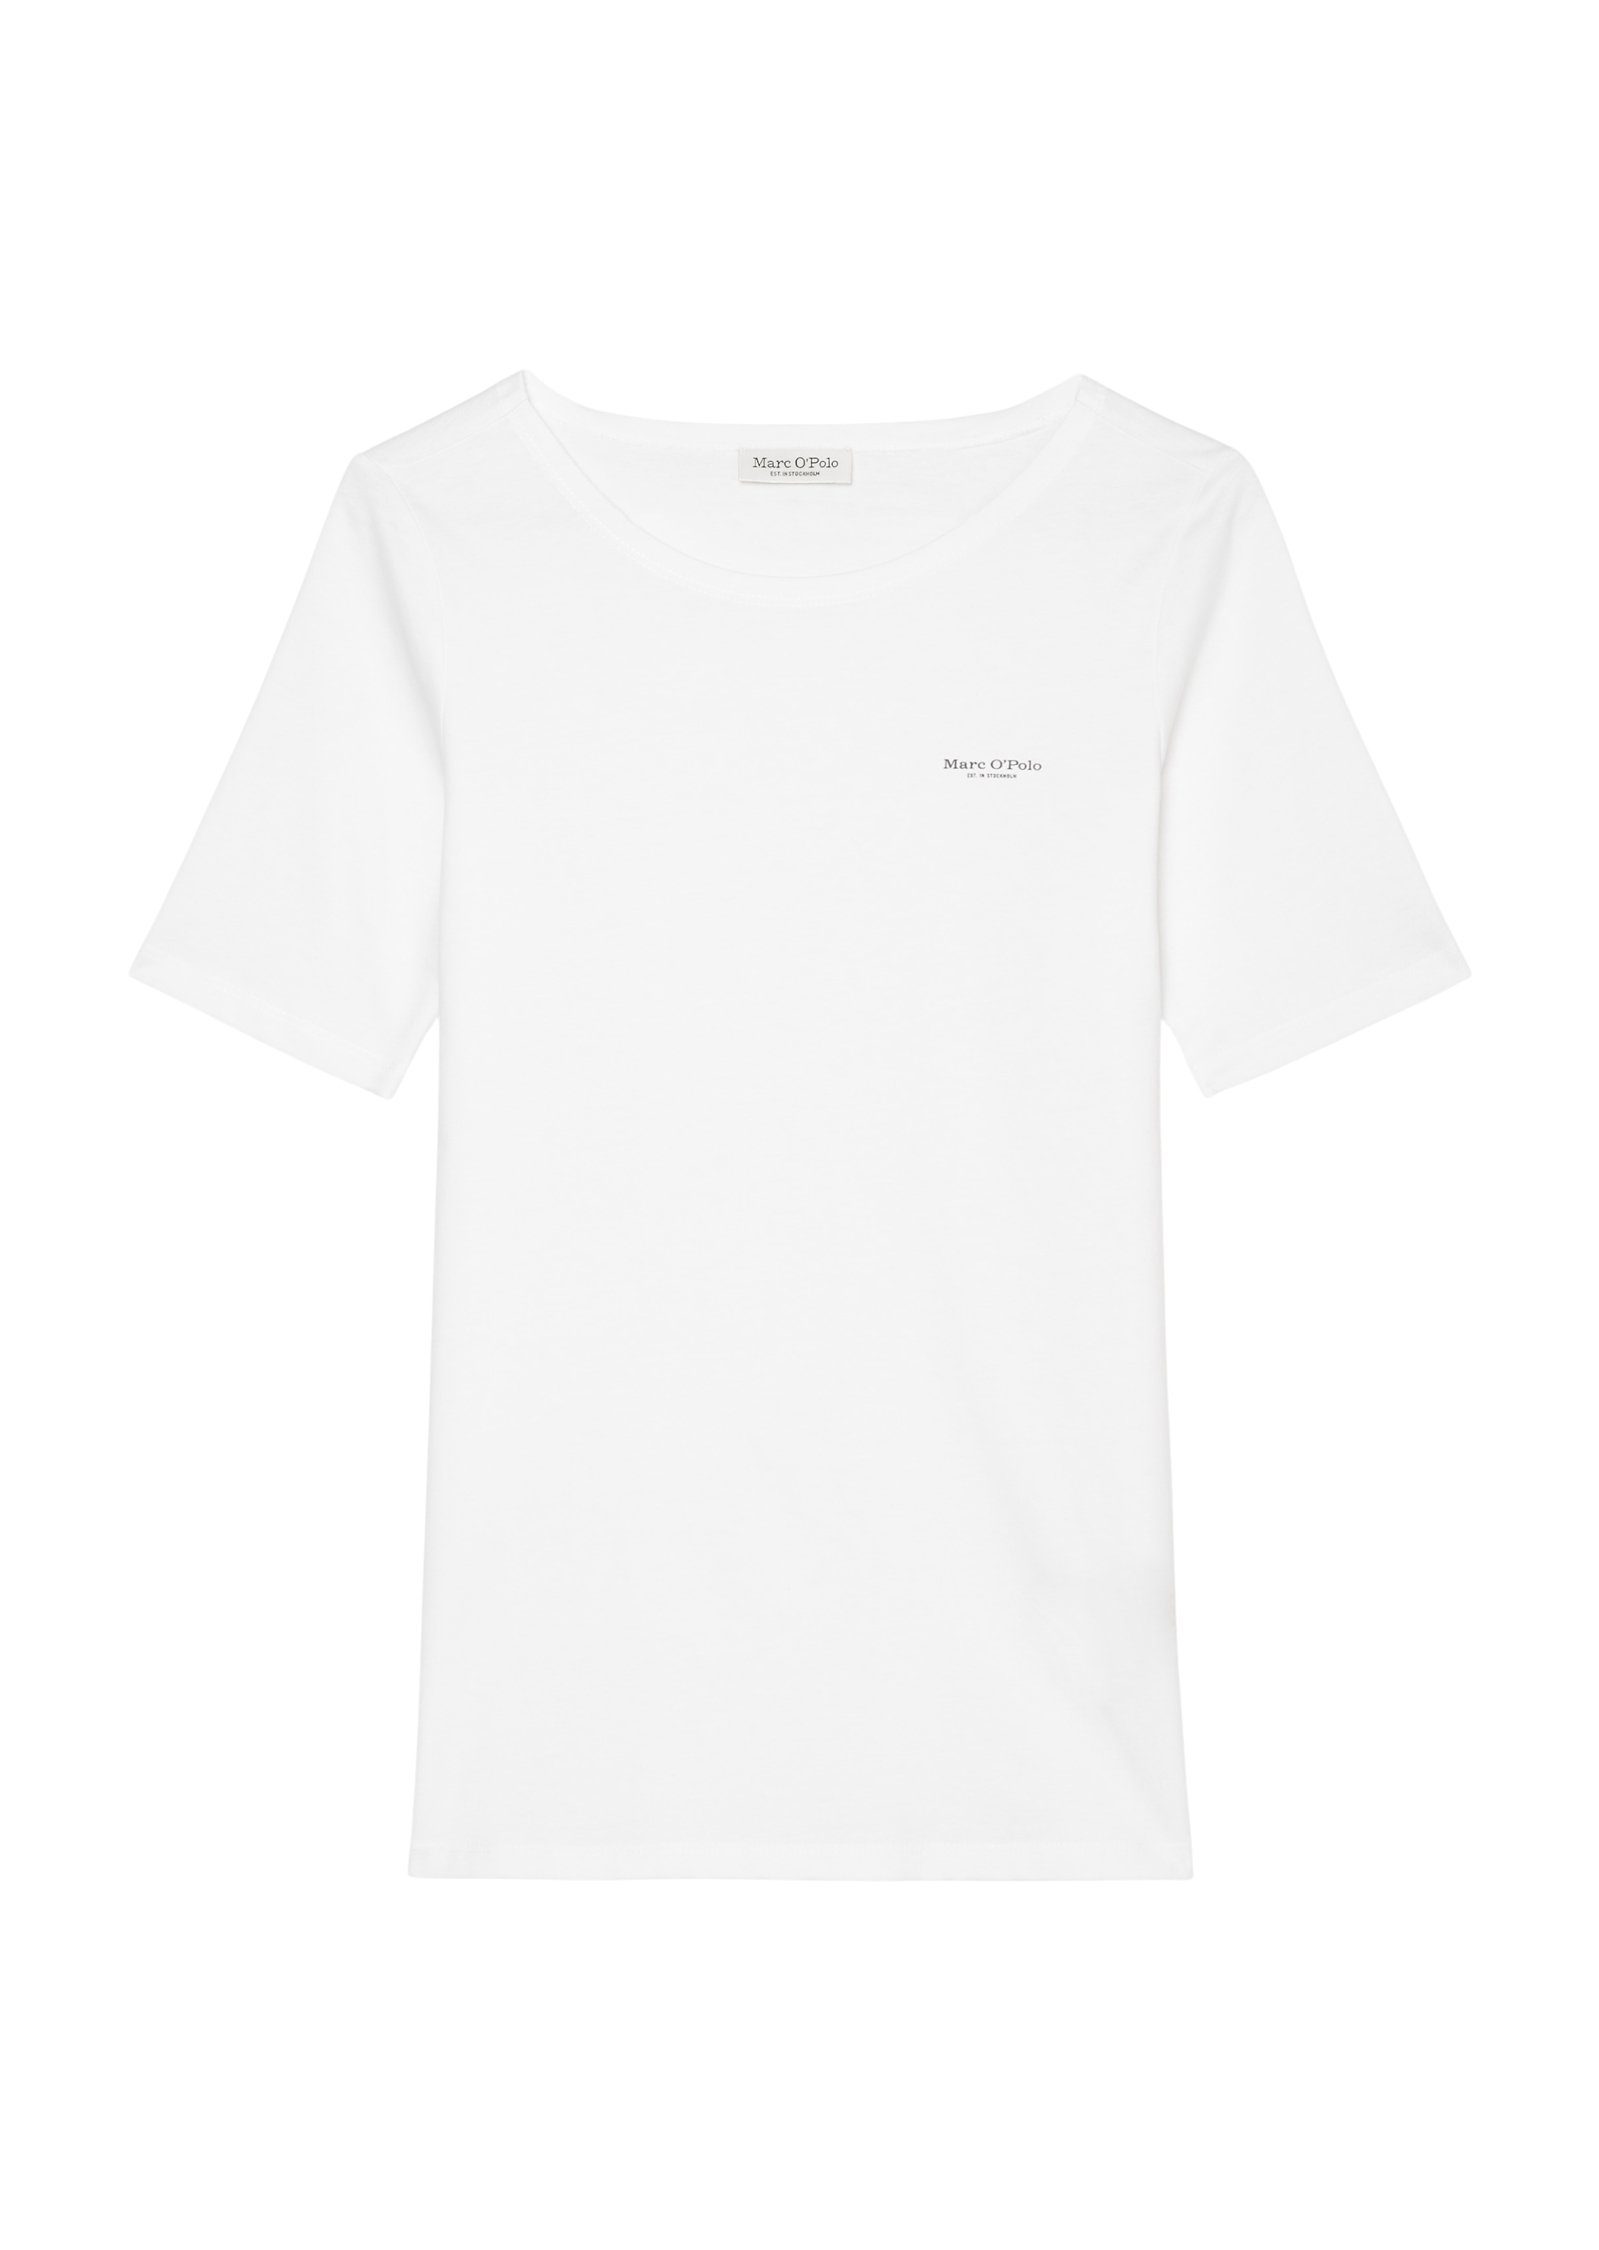 Marc O'Polo T-Shirt T-shirt, short-sleeve, Brust kleinem mit Logo auf logo-print round neck, der white